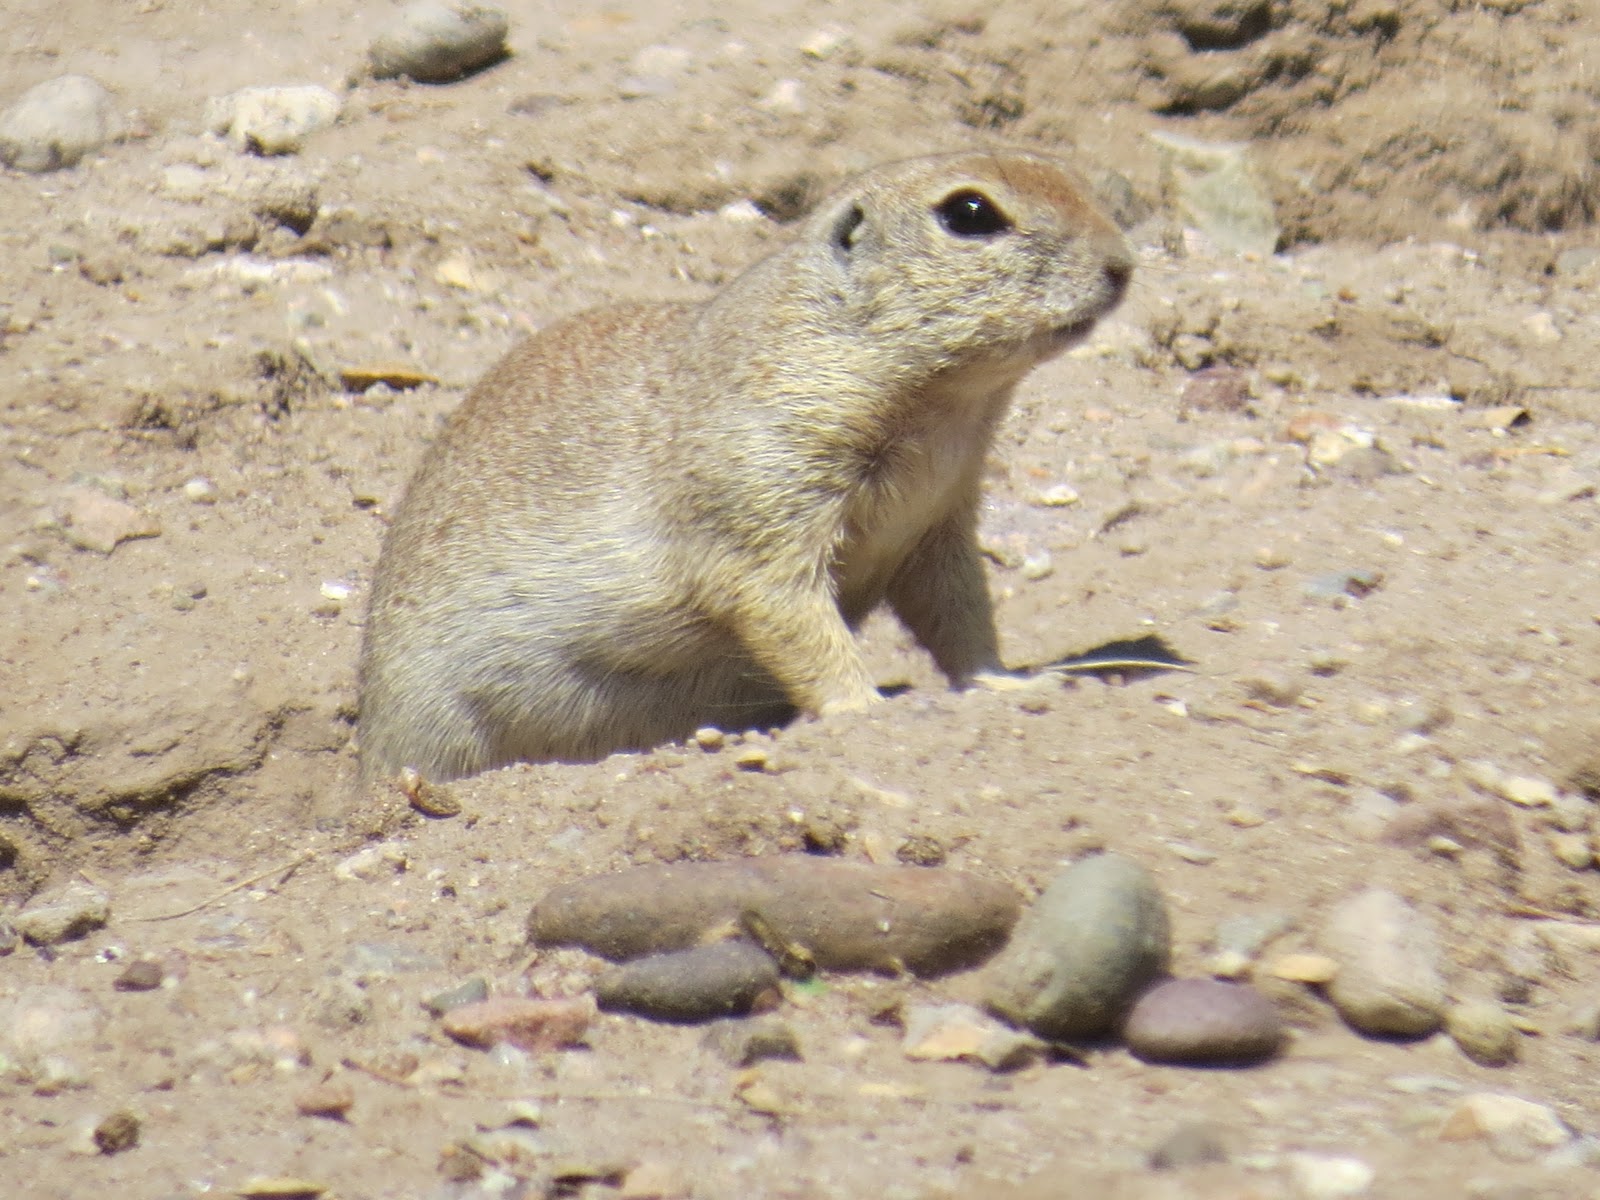 Natural Selections: Mammals of Southern Arizona